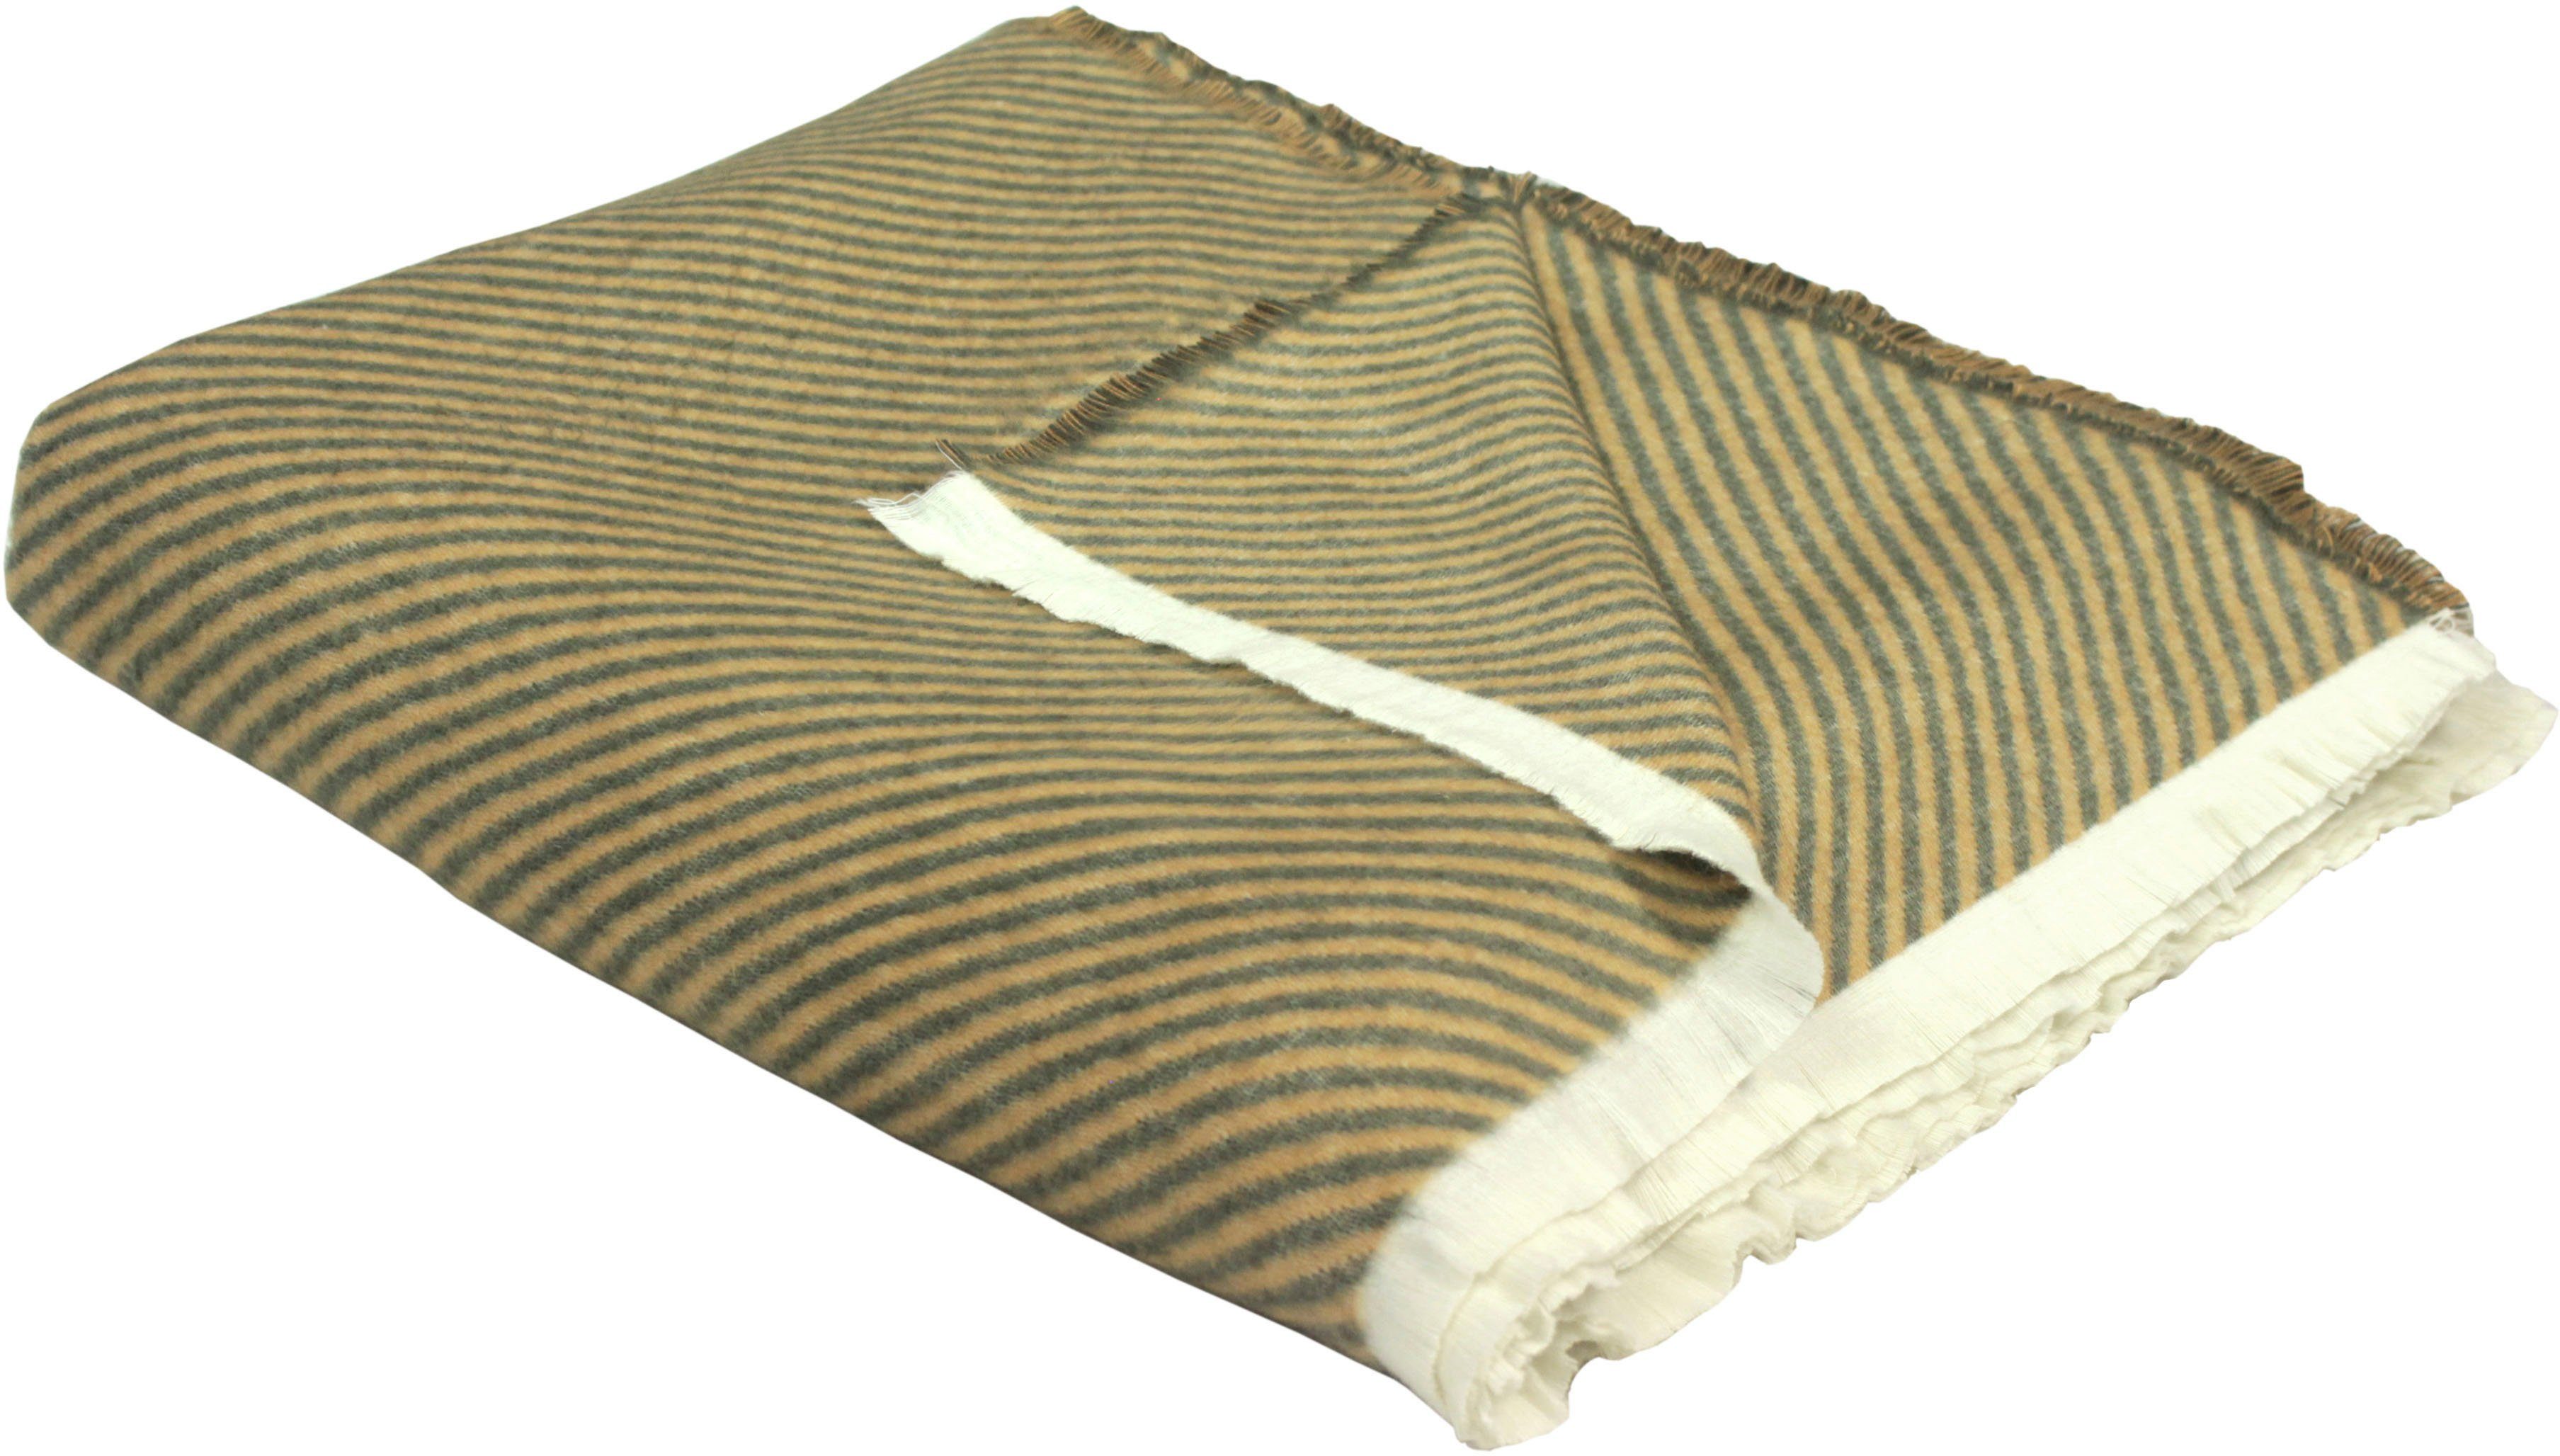 Wohndecke Stripes, Adam, GOTS zertifiziert - nachhaltig aus Bio-Baumwolle, Kuscheldecke braun